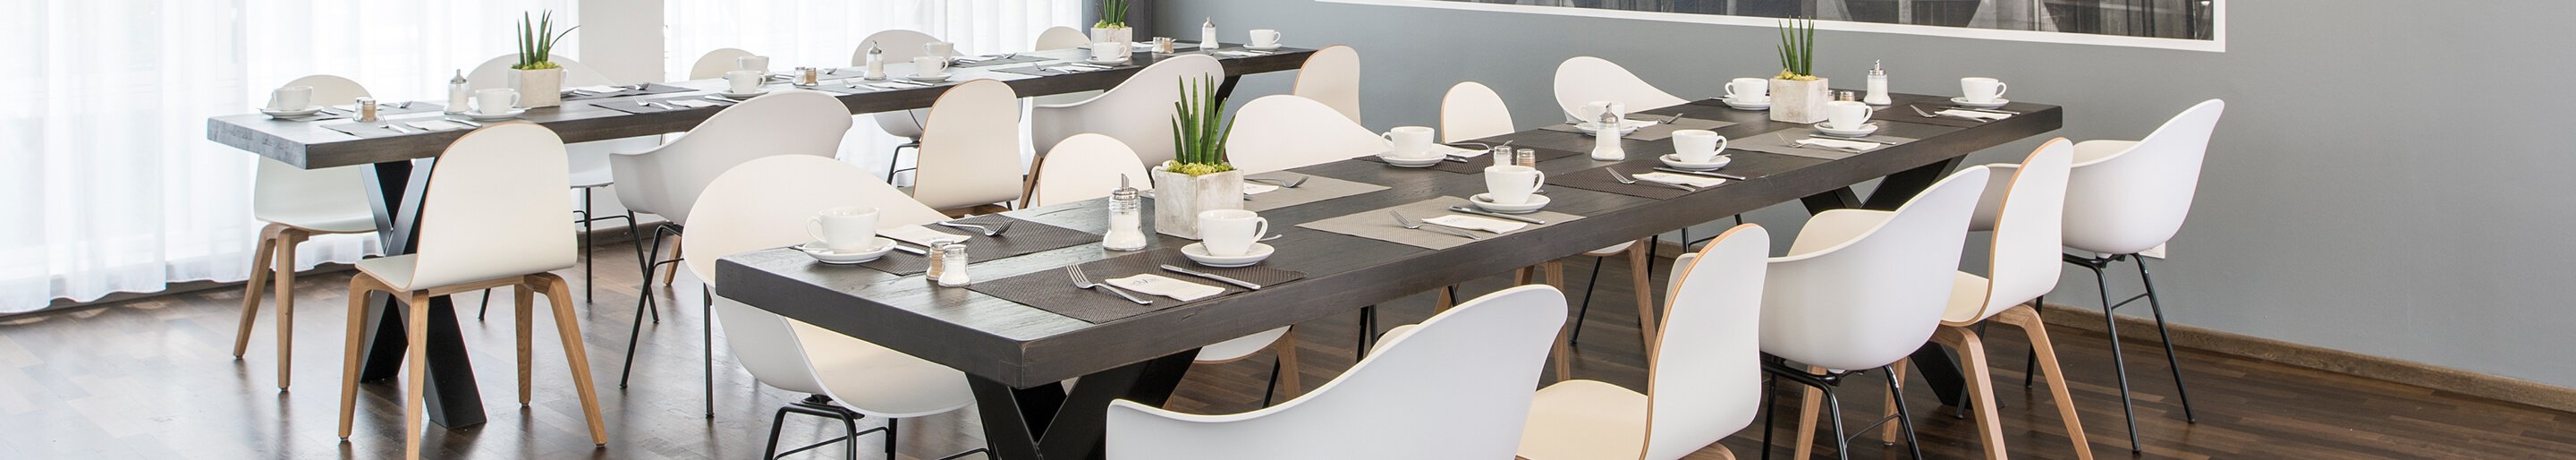 Indoor Modulare Stuhlsysteme für Gastronomie, Hotellerie, Konferenz oder Kantine